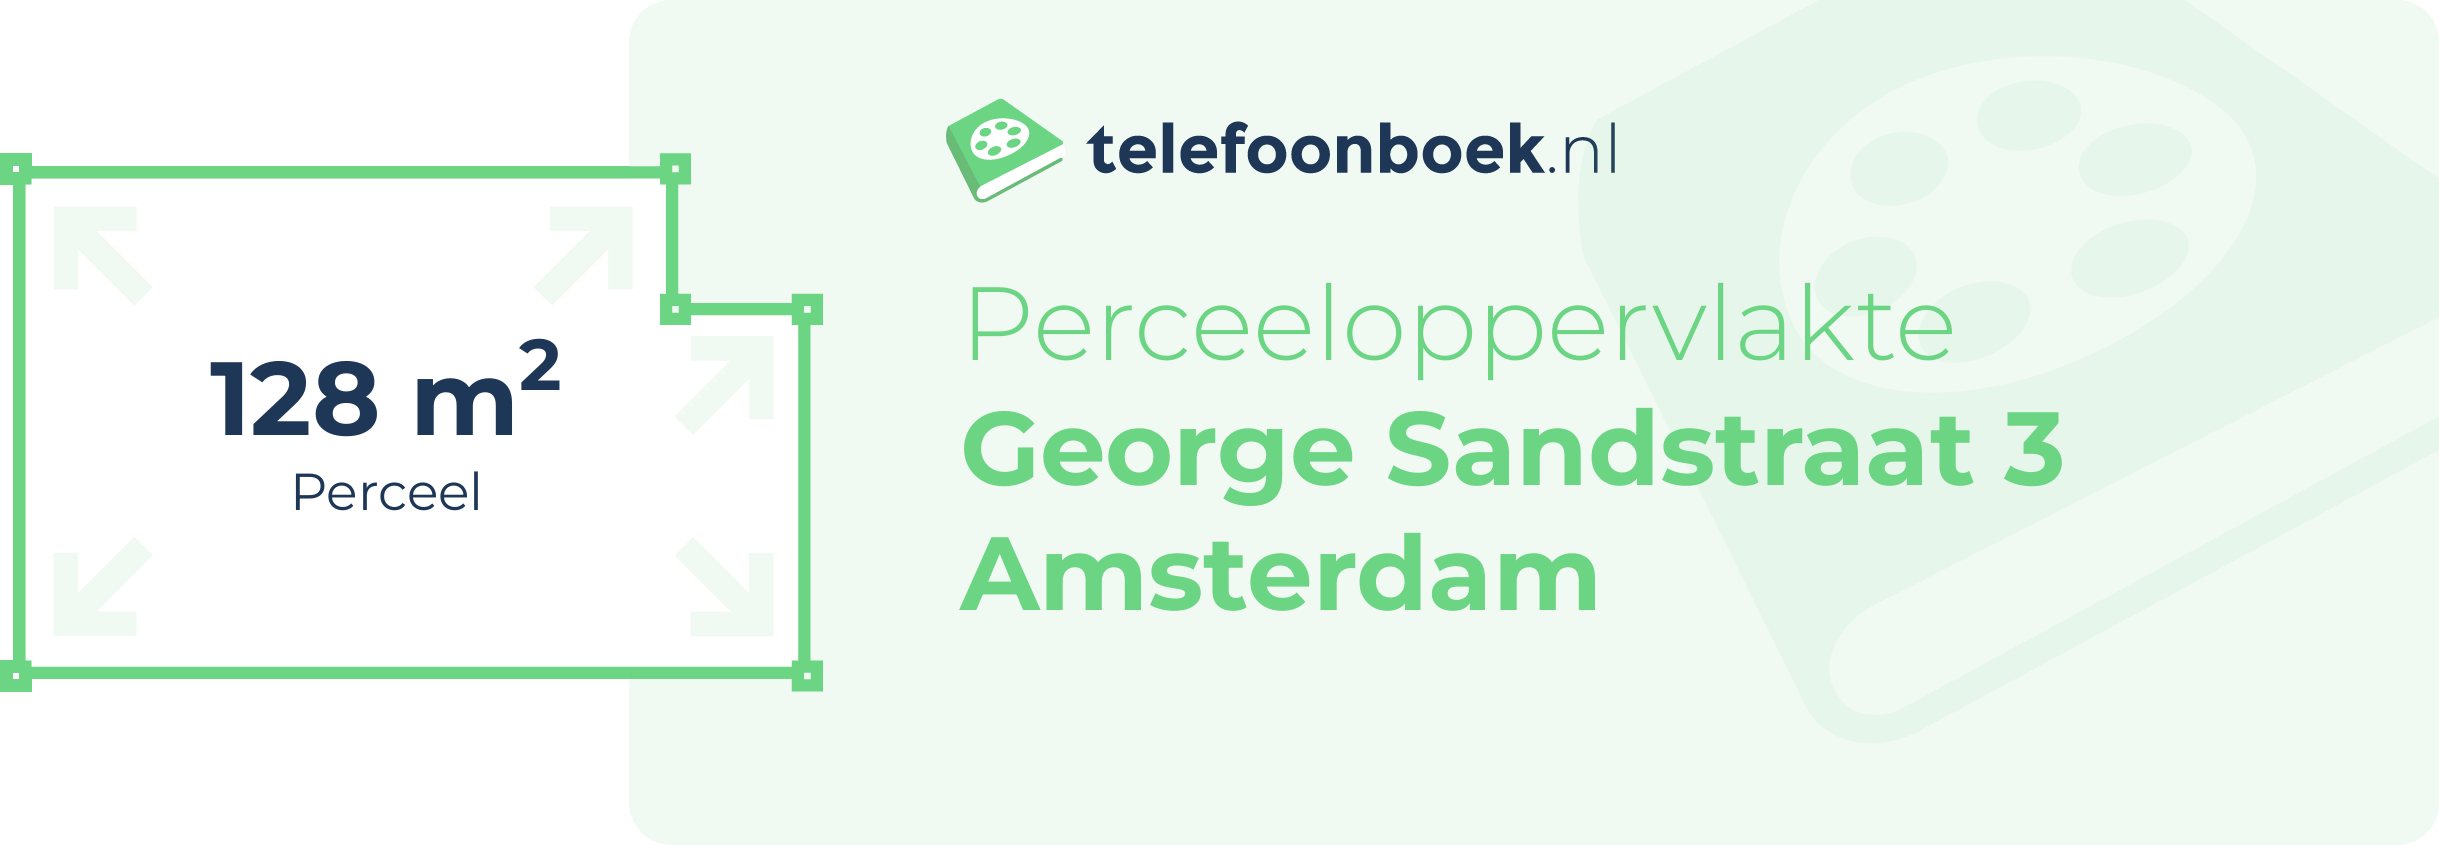 Perceeloppervlakte George Sandstraat 3 Amsterdam